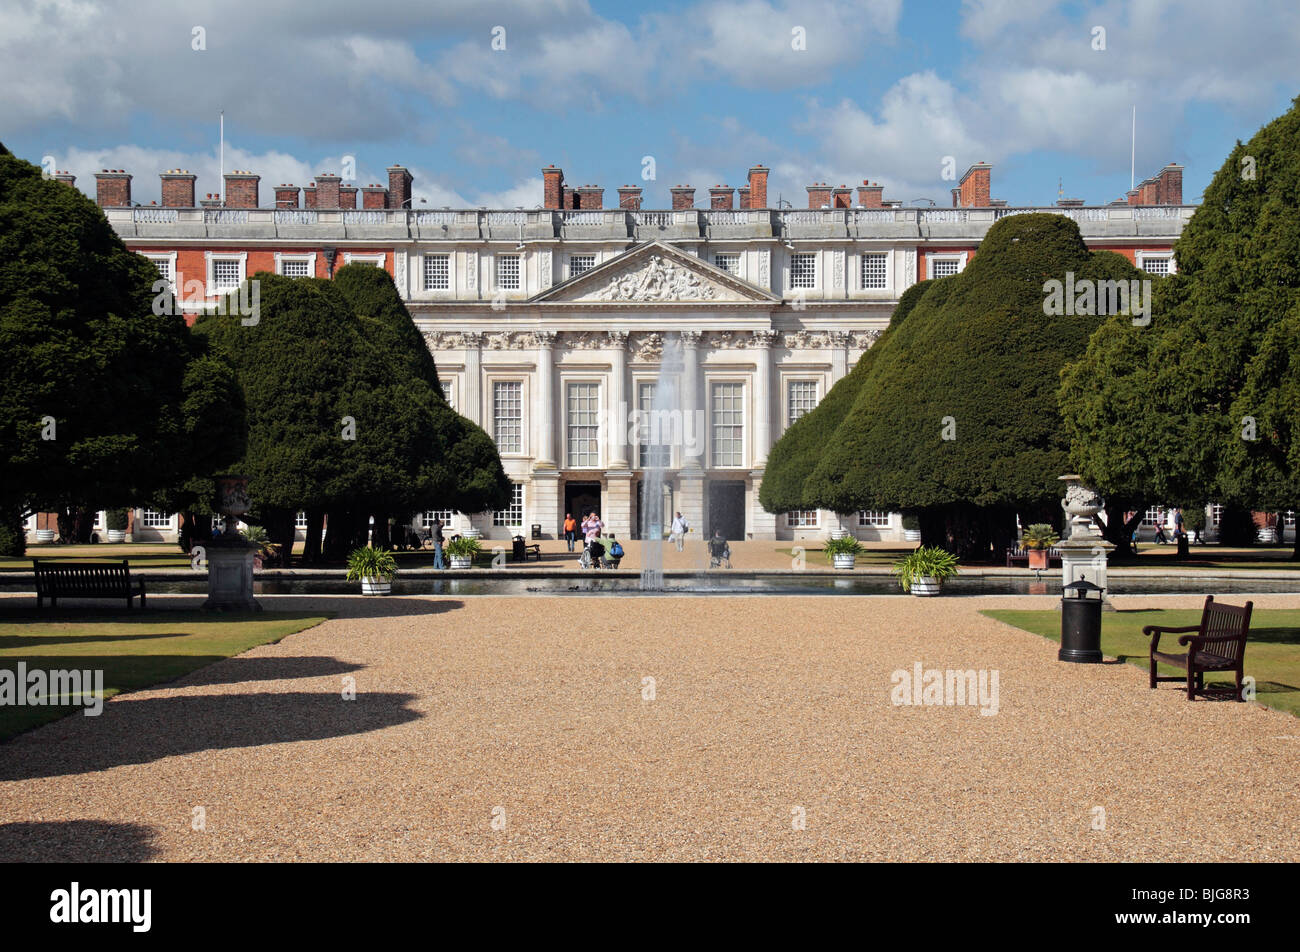 Blick über die Gärten von Osten in Richtung der Ostfassade des Hampton Court Palace, Richmond Upon Thames, England. Stockfoto